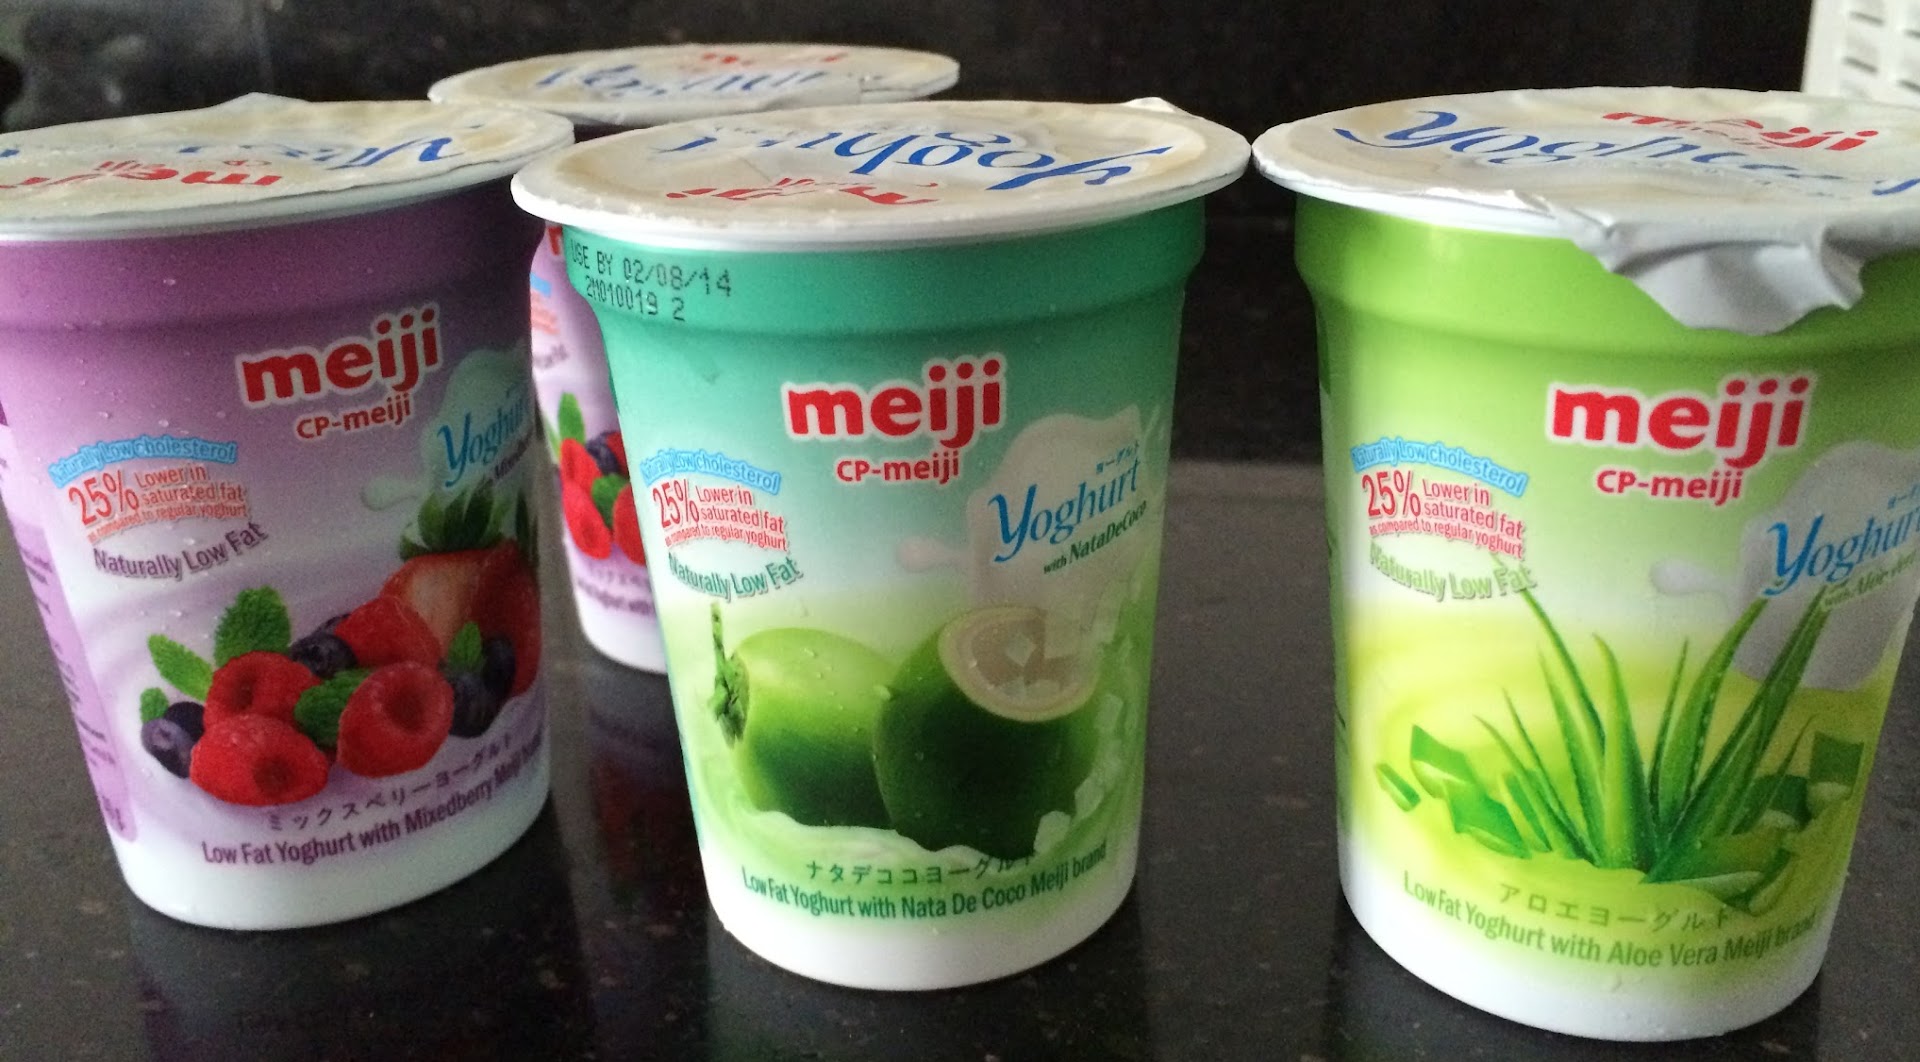 Meiji Yogurt